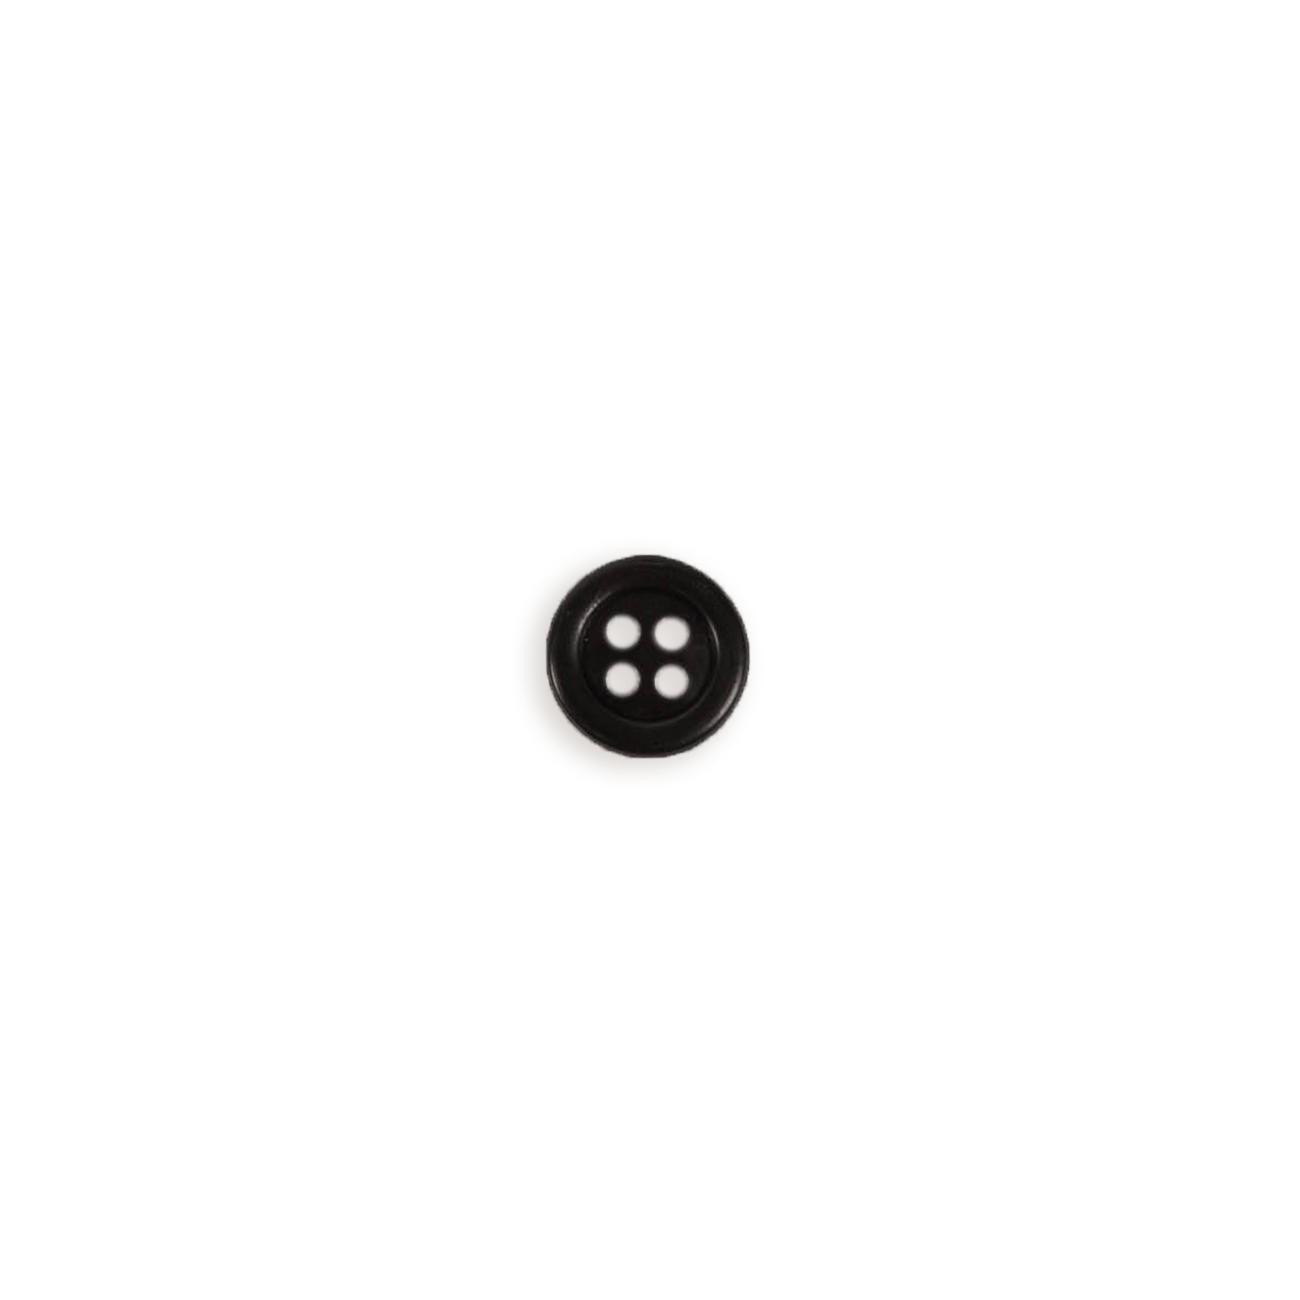 Plastic four-hole button 11mm - black